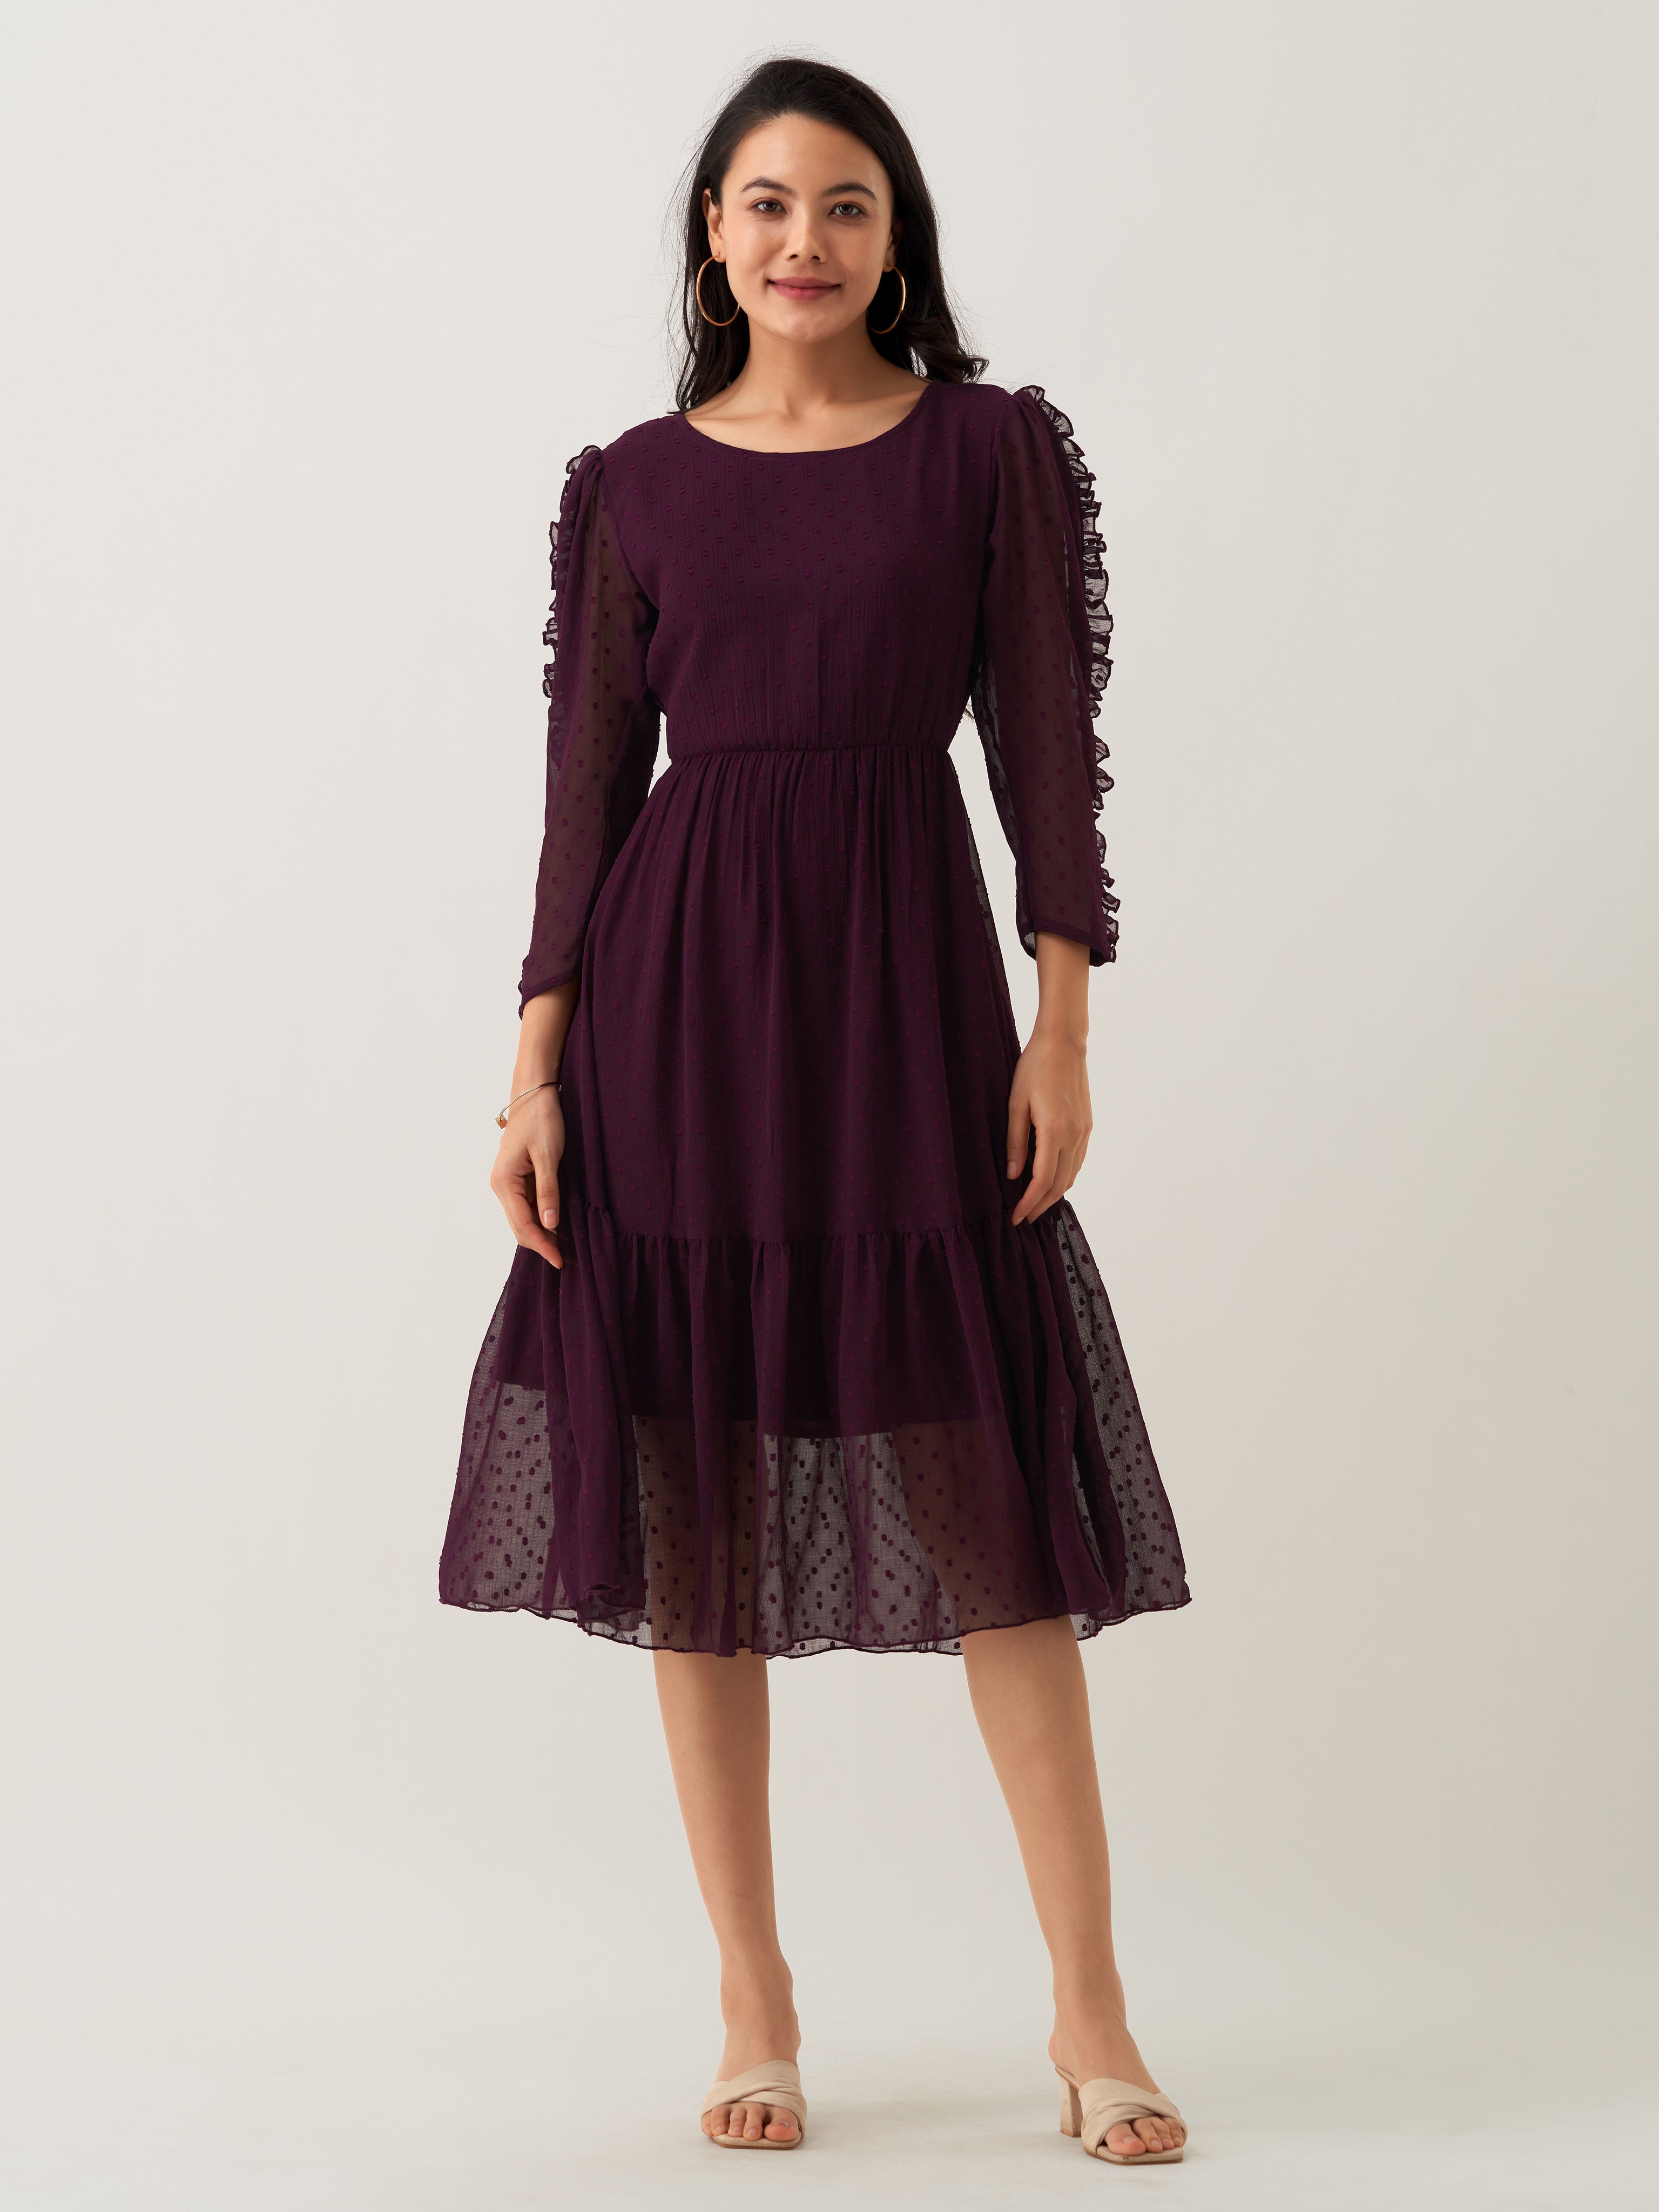 Purple Chiffon Brasso Swiss Dot Round Neck Dress